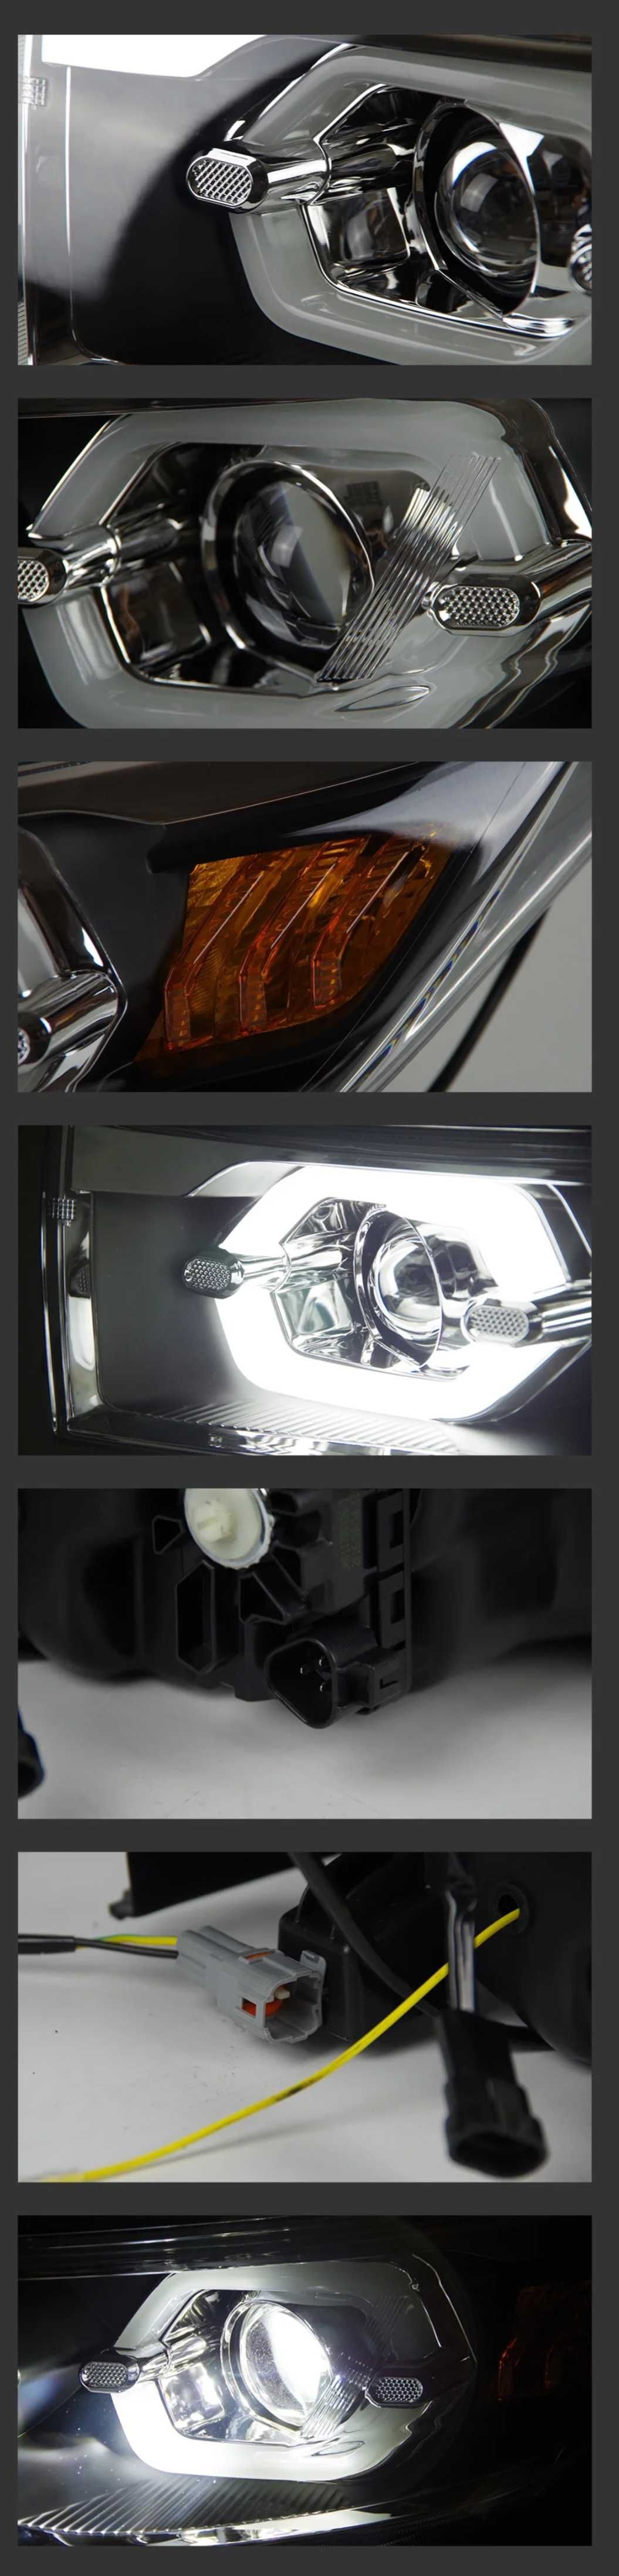 NOWE lampy przednie lampa przód Toyota Highlander 2014 - 2019